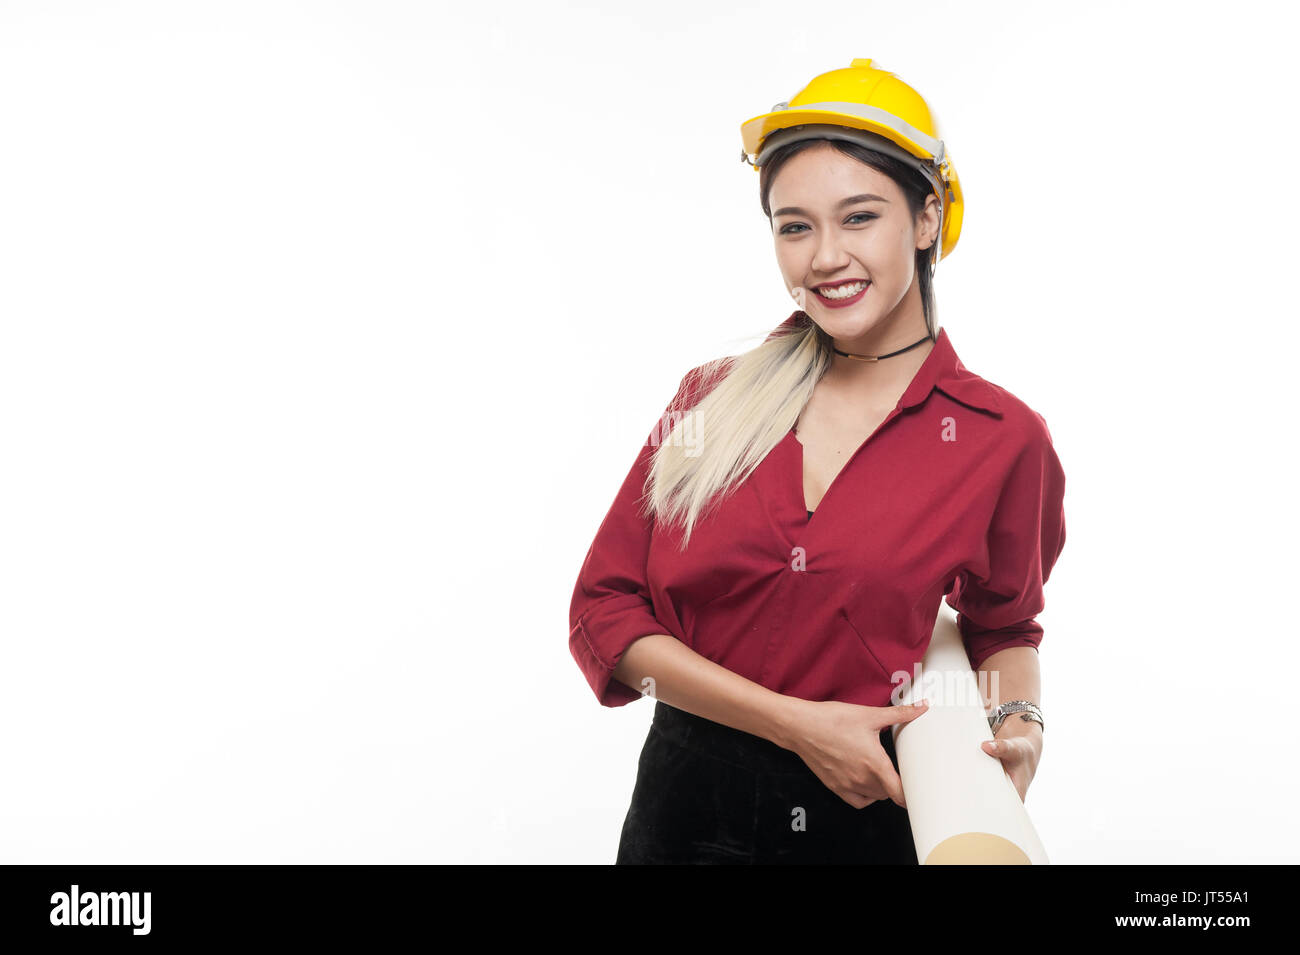 Joven mujer asiática arquitecto con camiseta roja y casco de seguridad amarillo sonriendo mientras transportaba blueprint papeles. La ocupación industrial las personas concepto Foto de stock